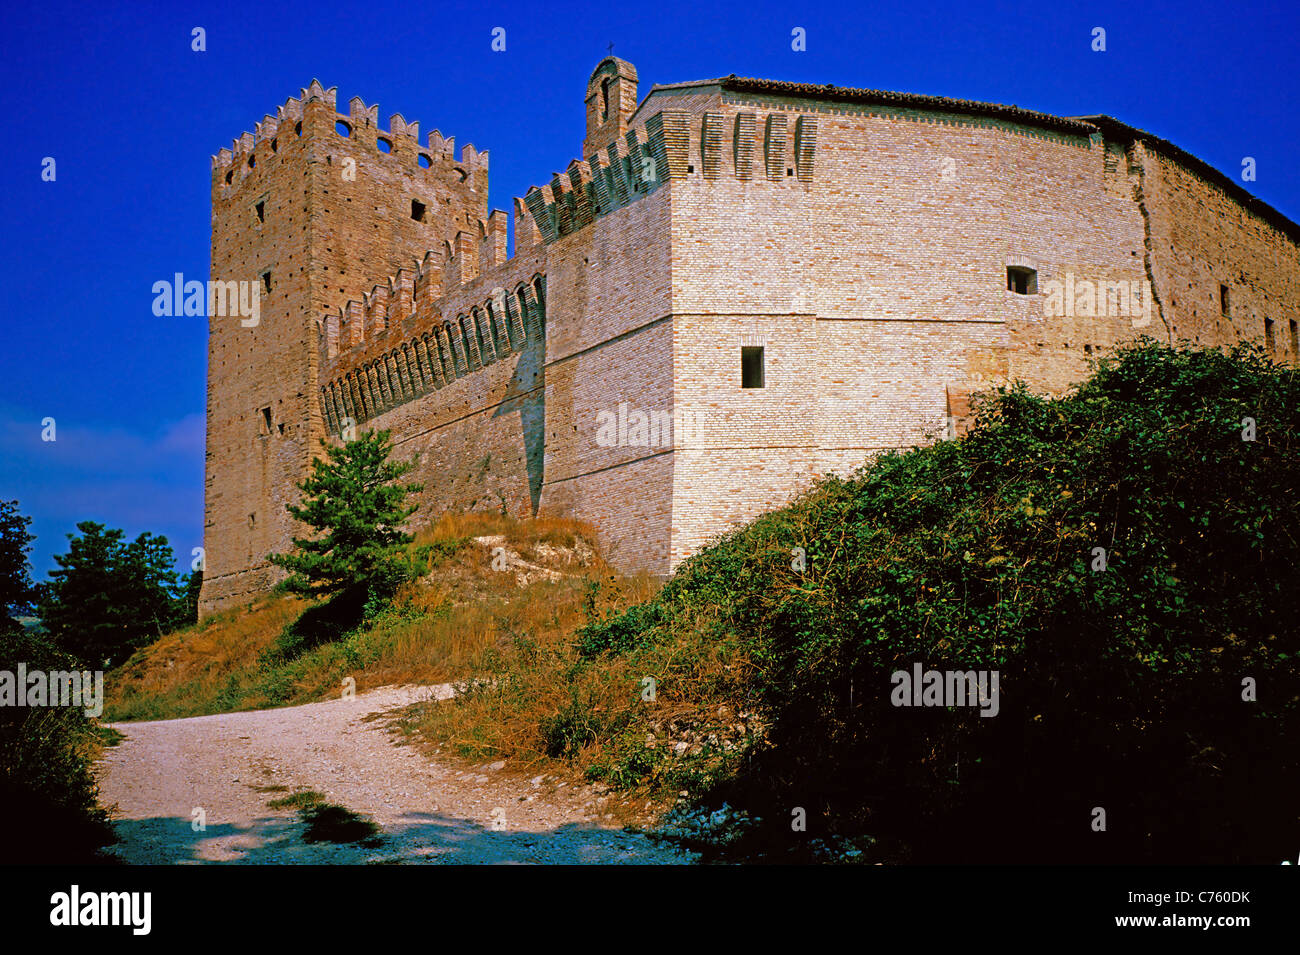 The  Rancia Castle near Tolentino, province of Macerata. Stock Photo